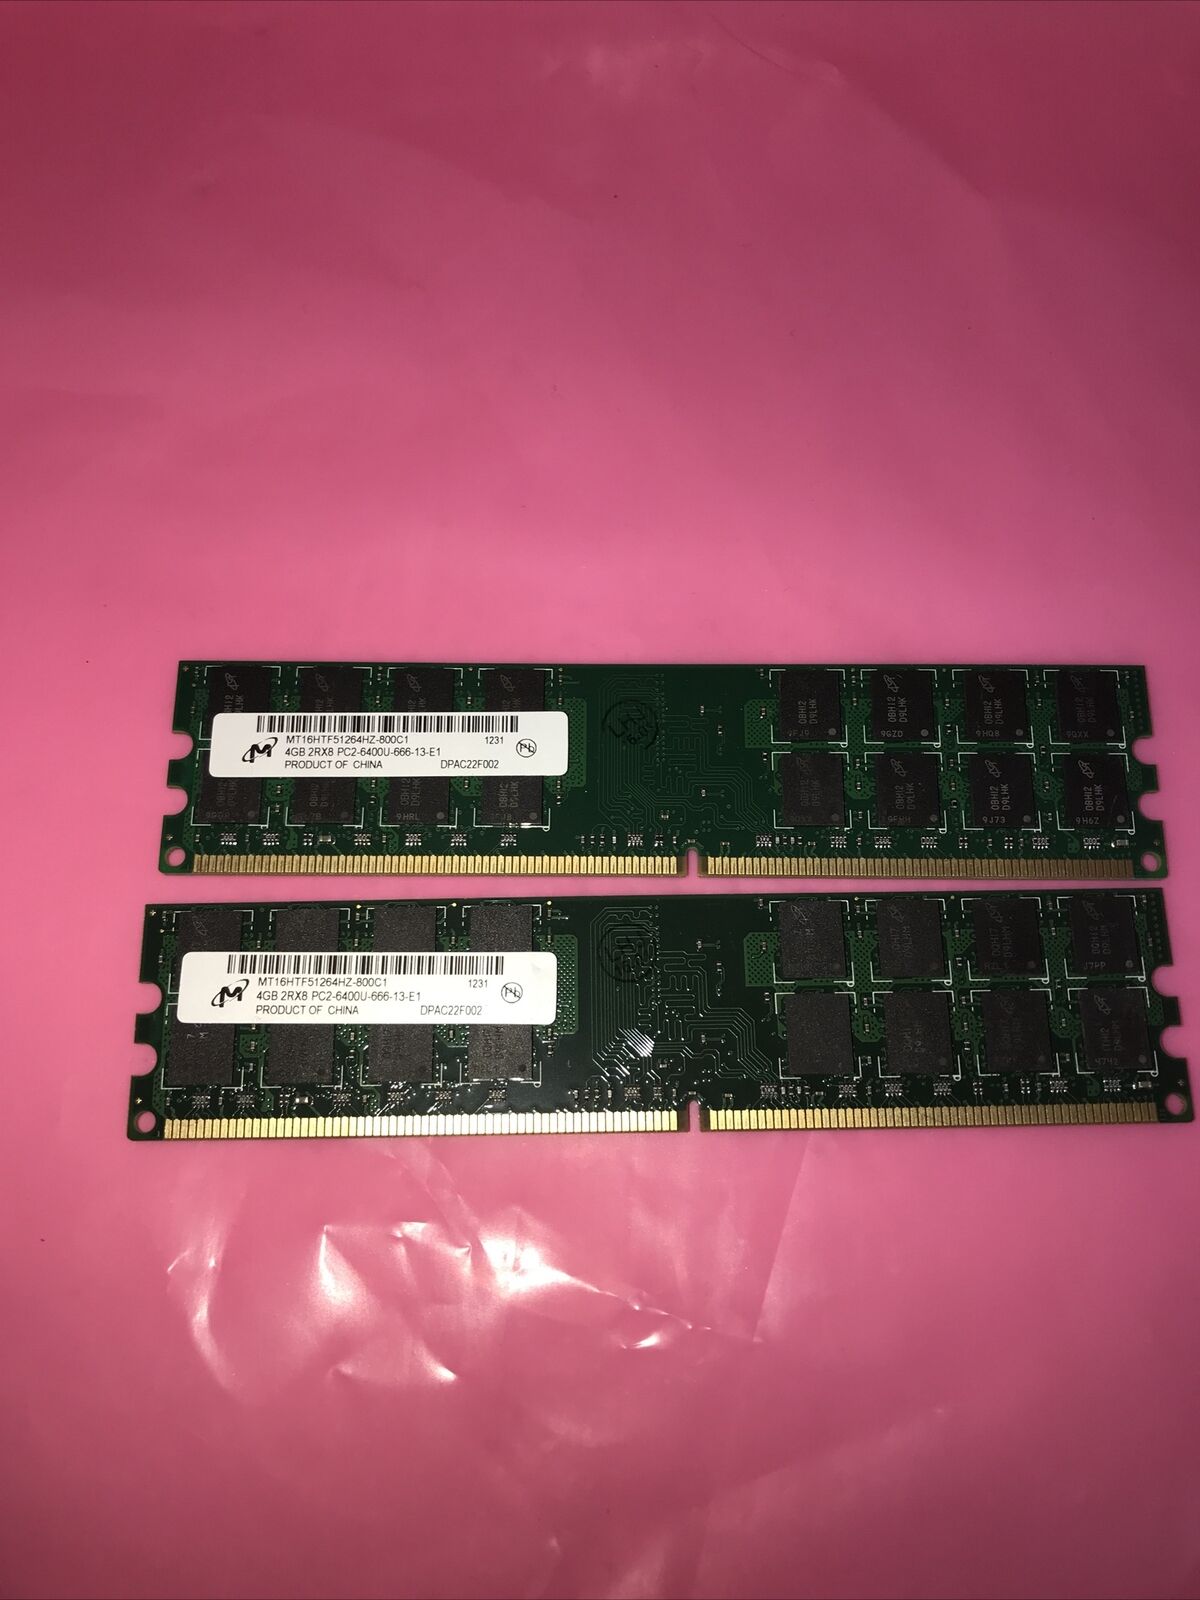 2 x 4GB Micron PC2-6400U-666 DDR2 800MHZ non-ecc desktop memory  (Rare)